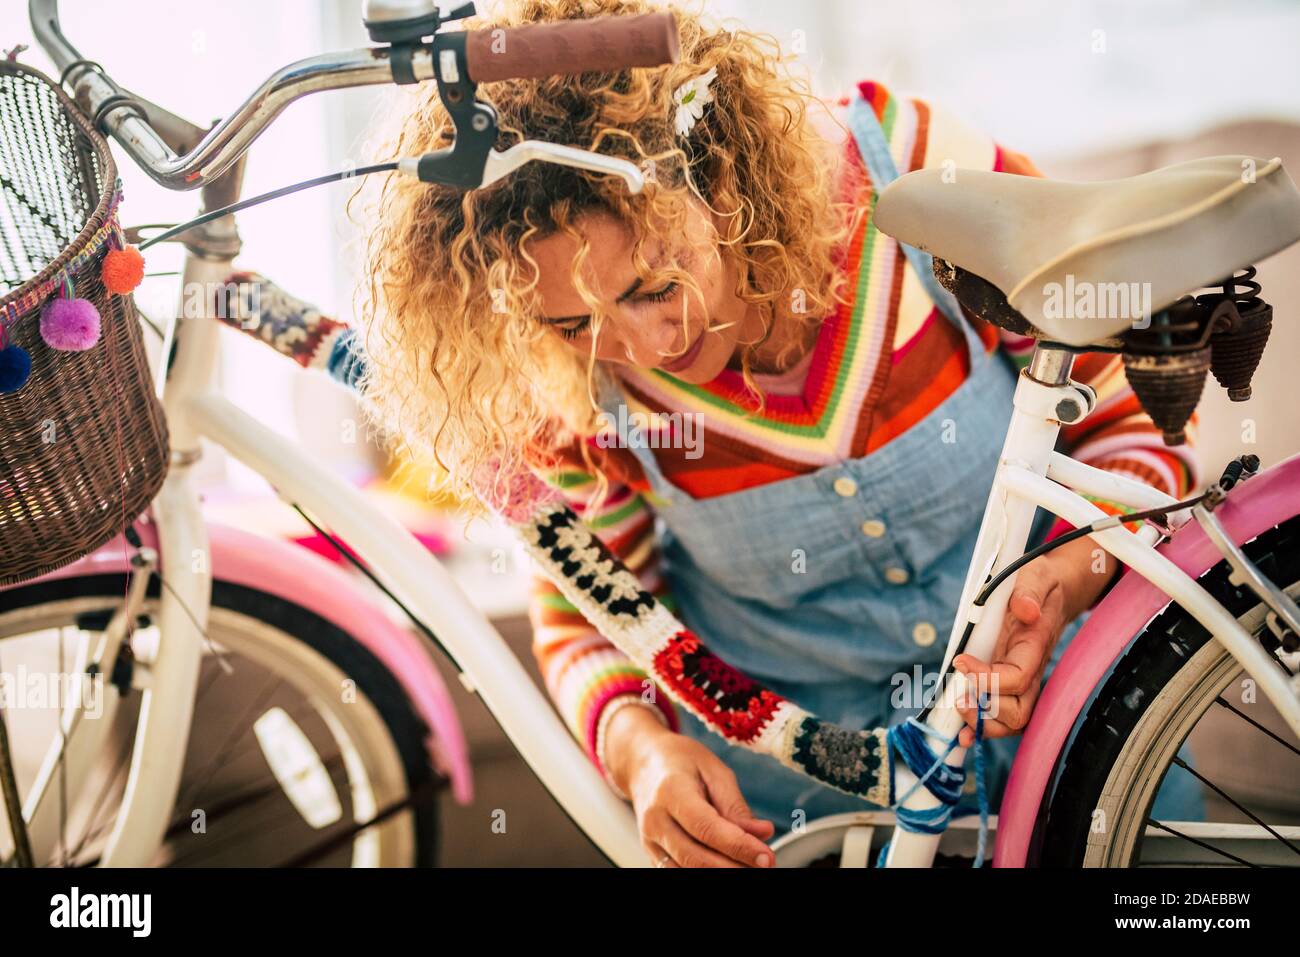 Donna adulta felice a casa in attività di svago di lavoro hobby modifica interna una moto femminile con pezzi di coperture e. pieno di colori - concetto di creatività e bicicletta hippy boho creazione - persone che godono di lavoro artistico a casa Foto Stock